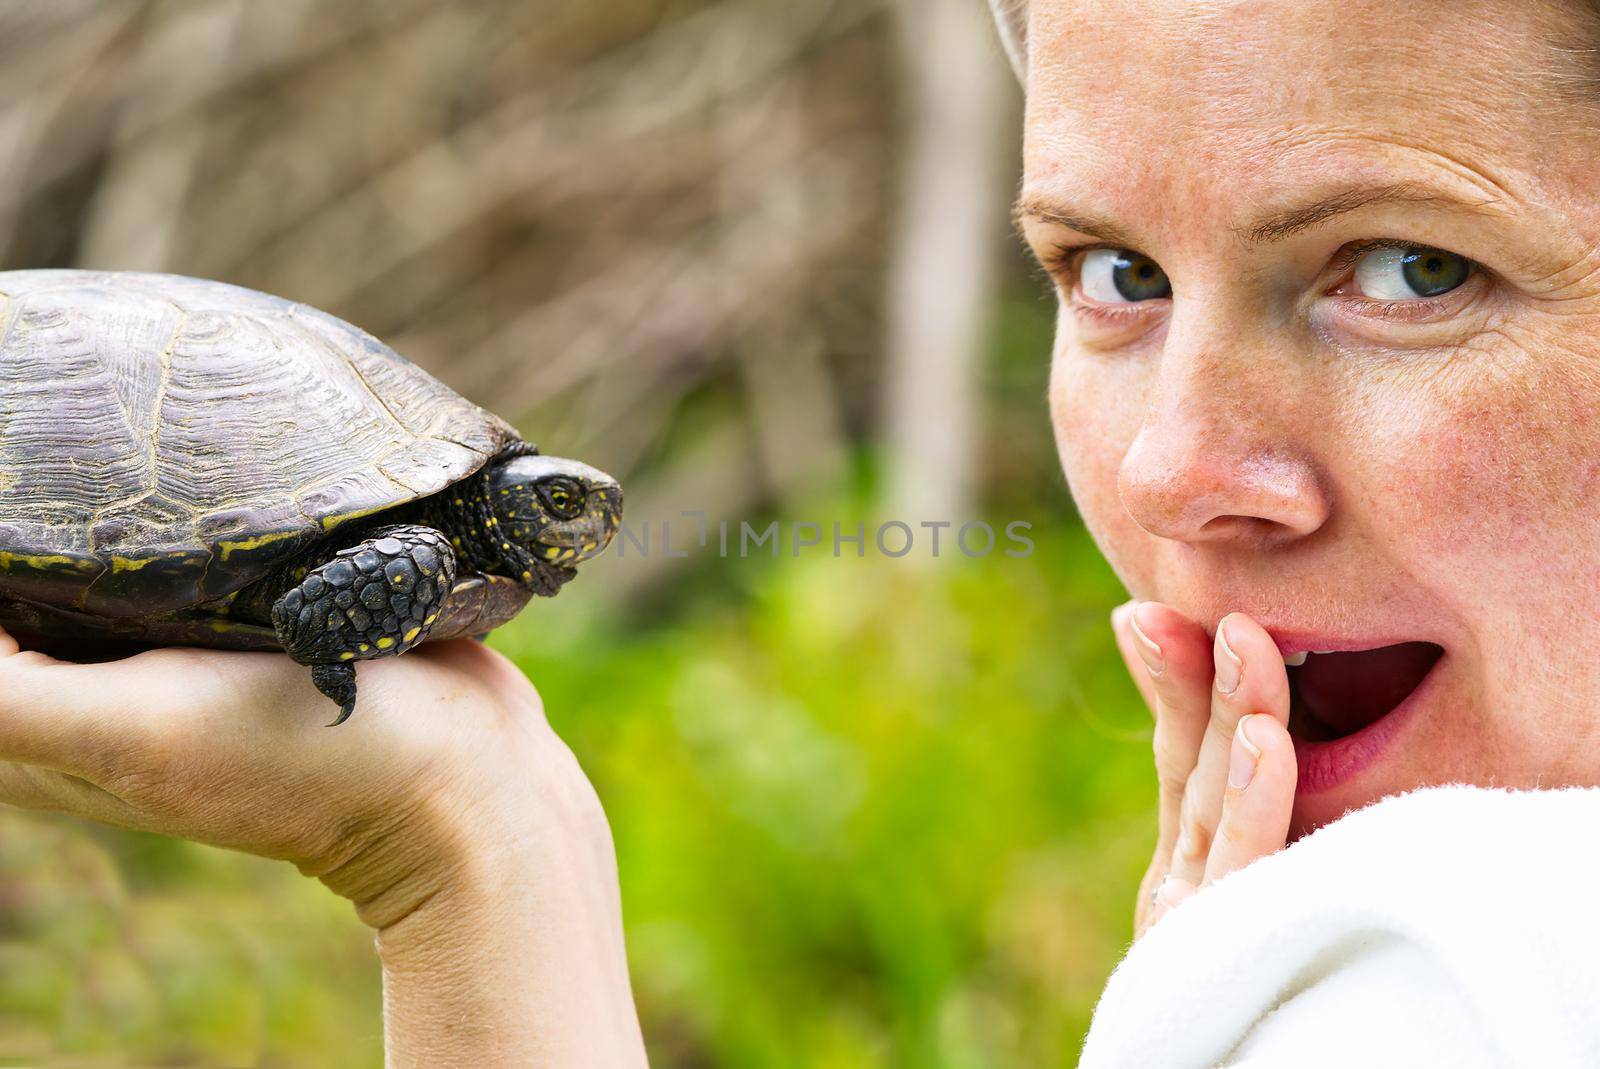 Women hold European turtle, close up portrait. Happy women at the turtle sanctuary hatchery.